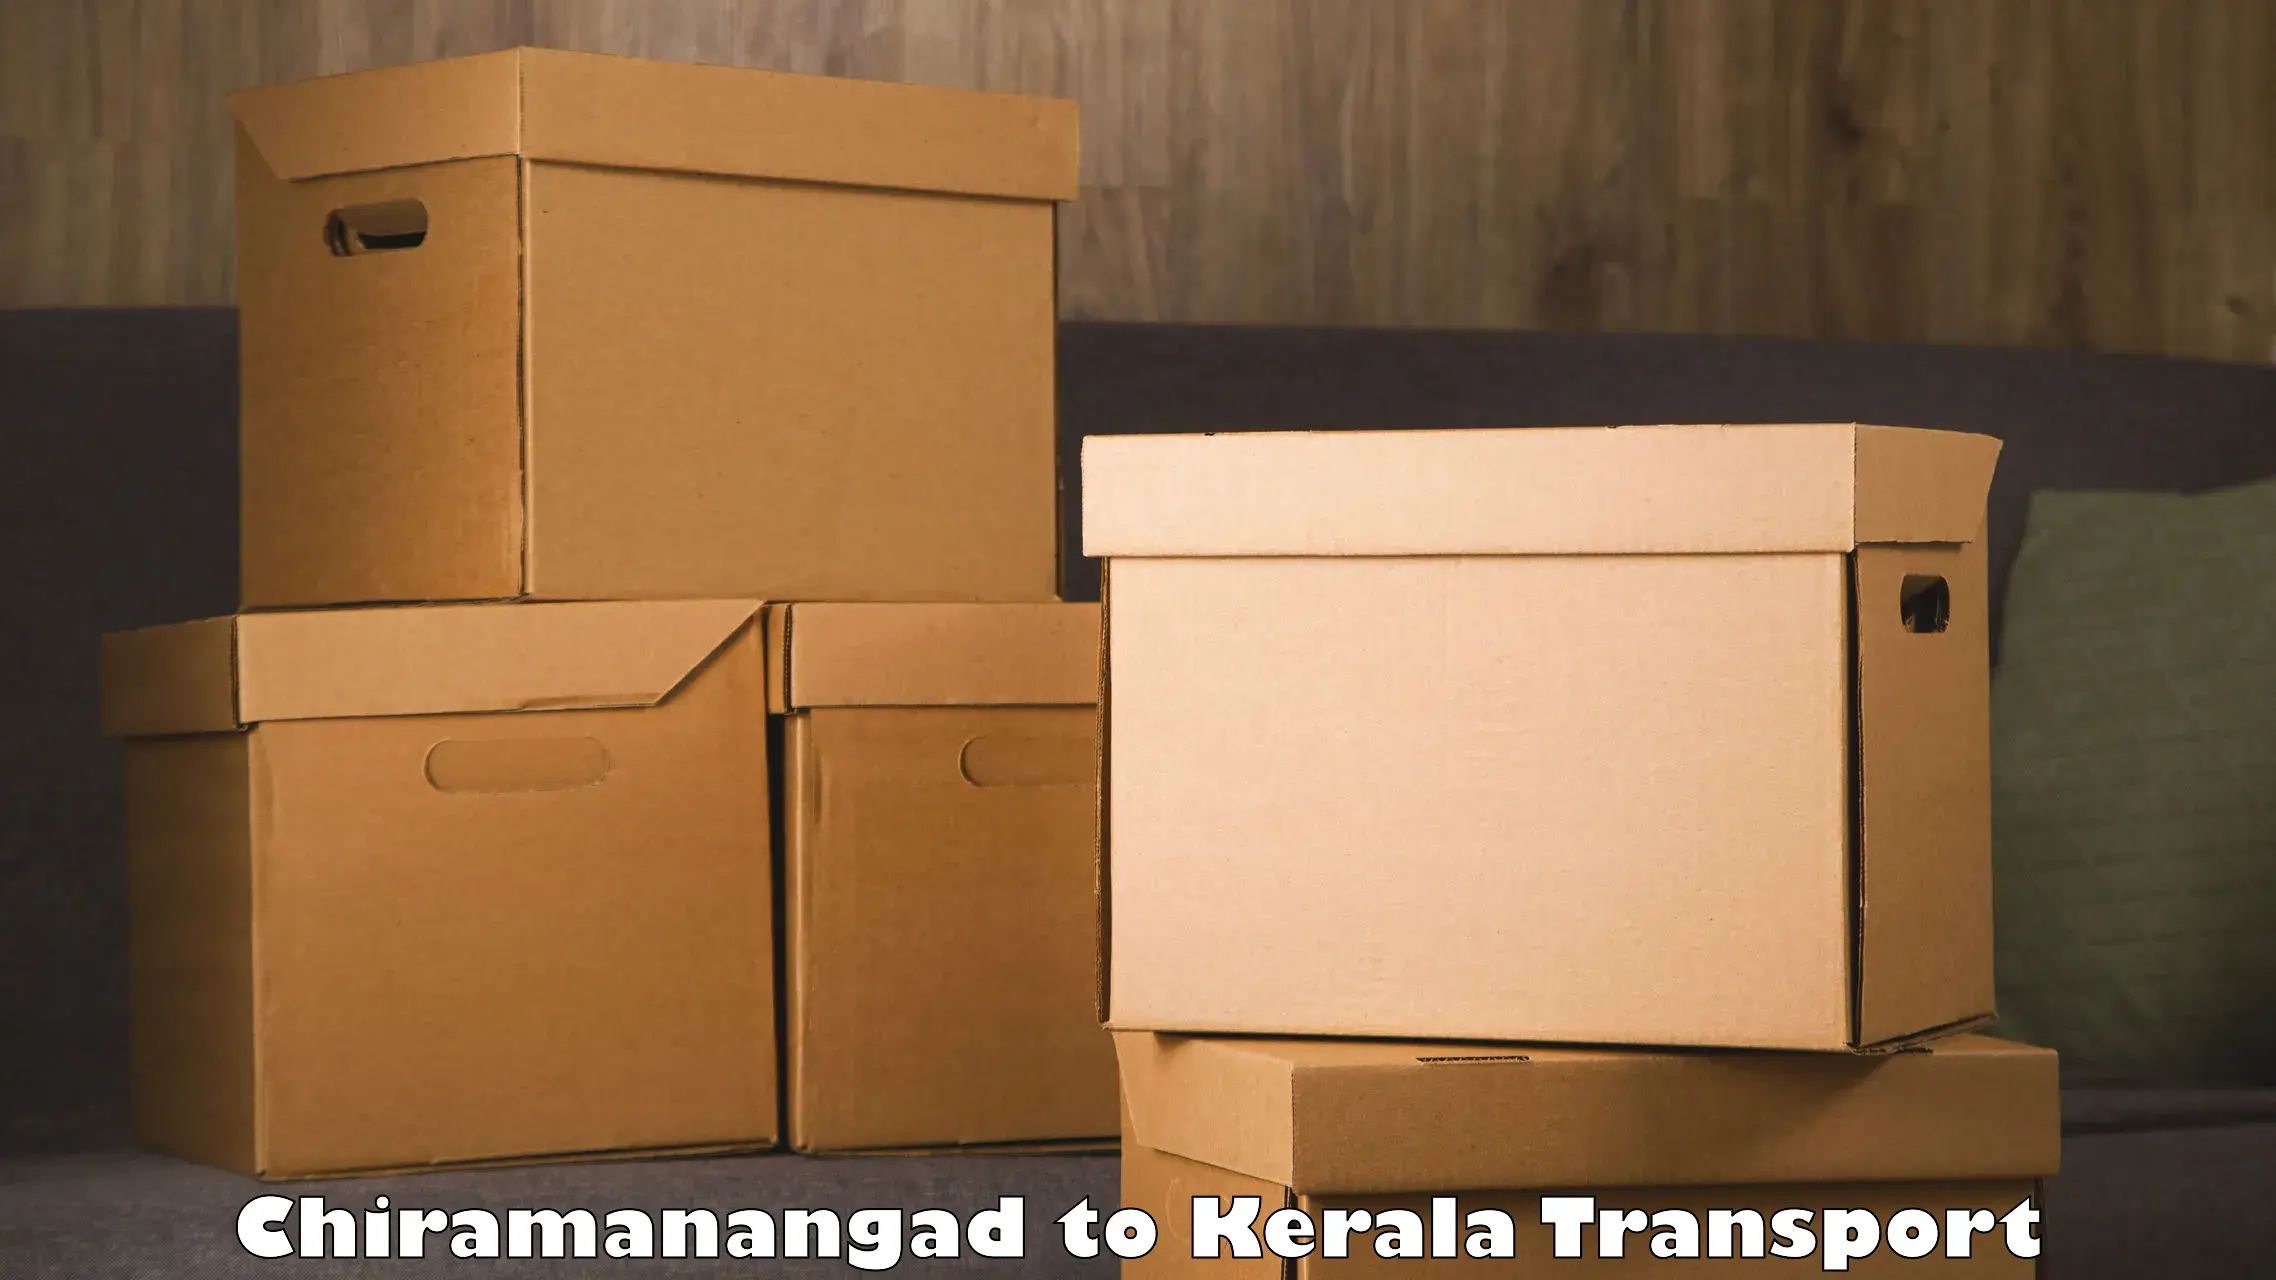 Truck transport companies in India Chiramanangad to Changanacherry